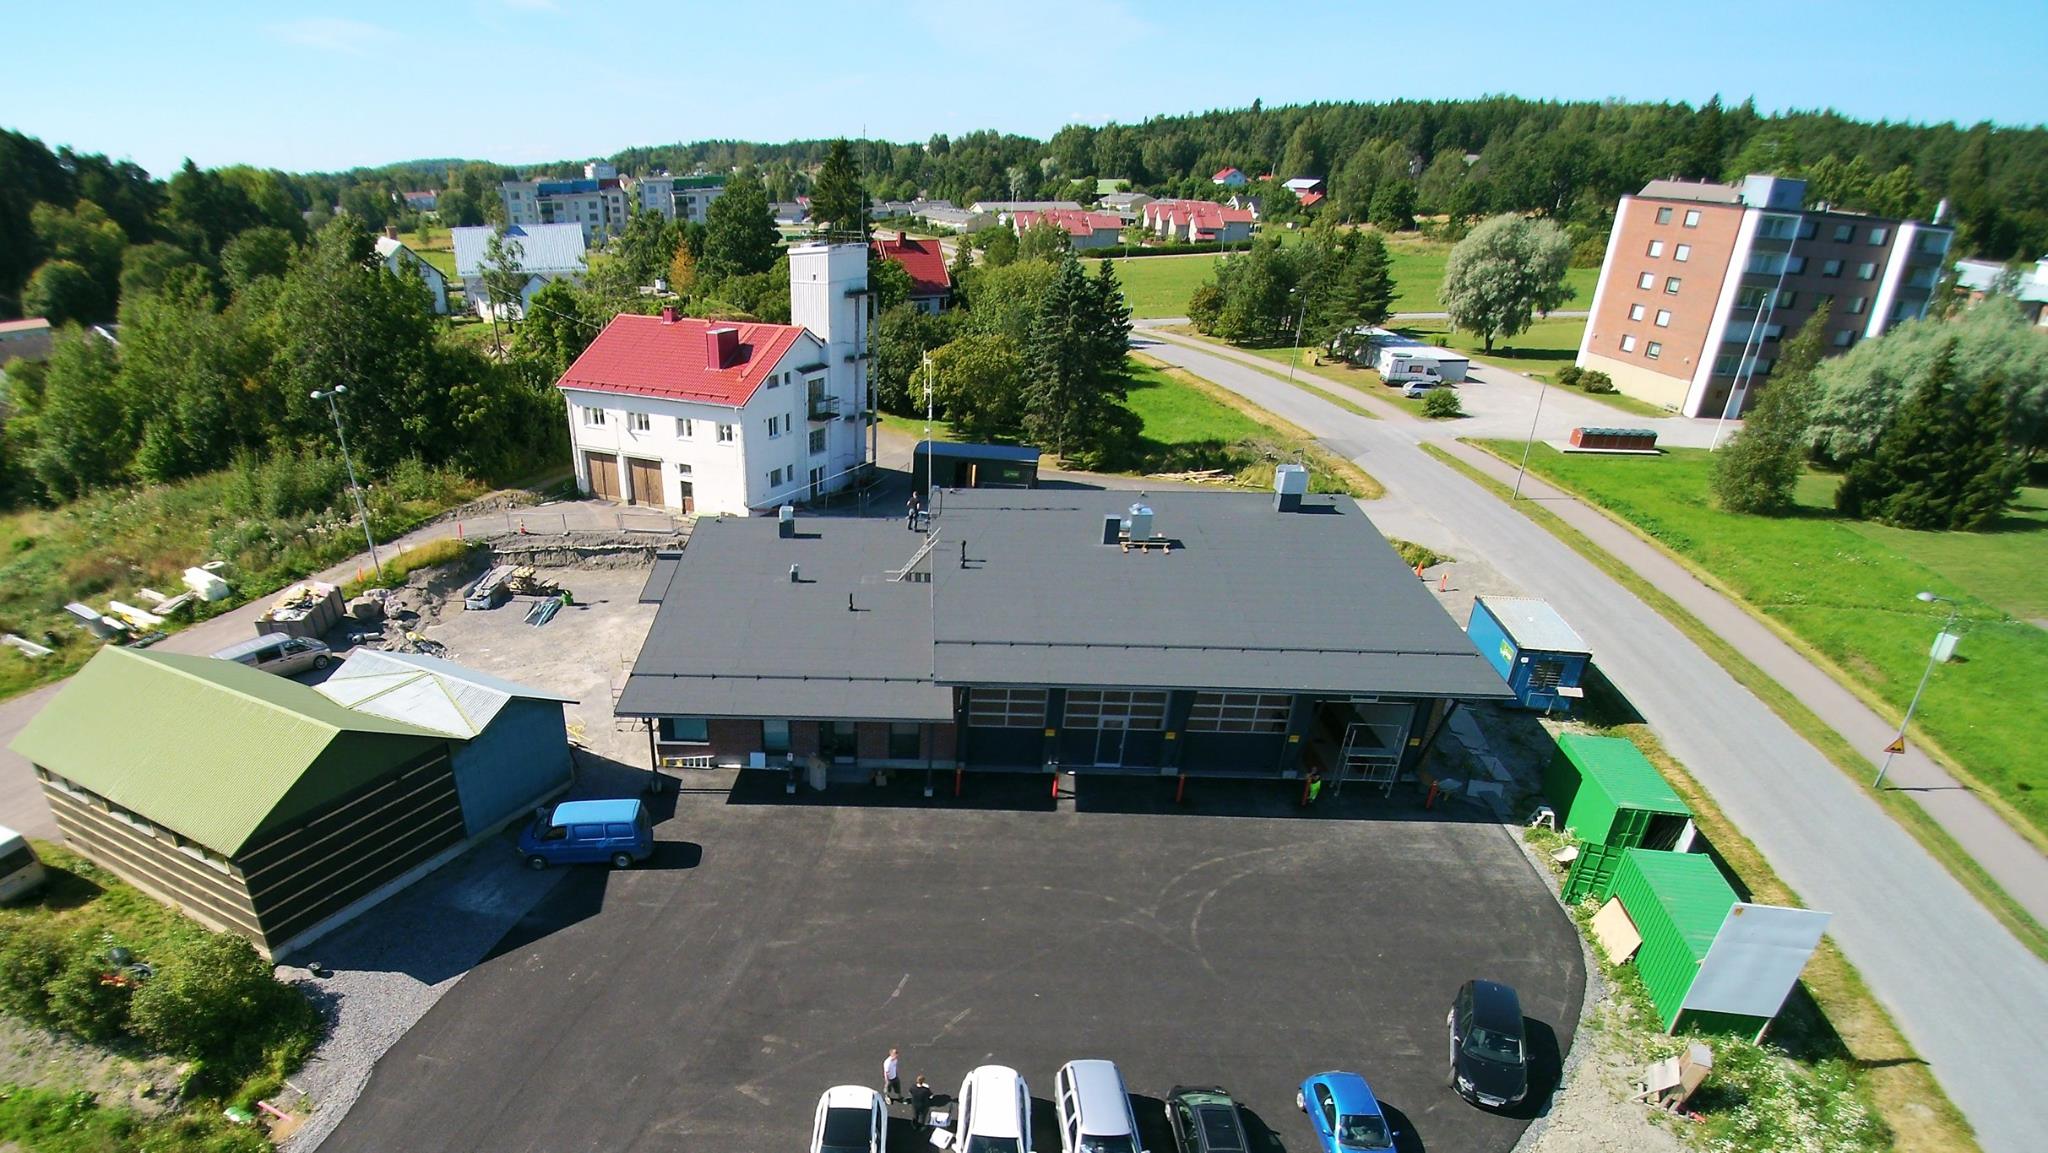 Kuva: Paloasemaa rakennetaan. Taustalla vaalea rakennus on vanha paloasema ja vasemmalla vihreä on kalustohalli sekä harmaa osa "sosiaalitiloja". Kuva: Piikkiön VPK ry.